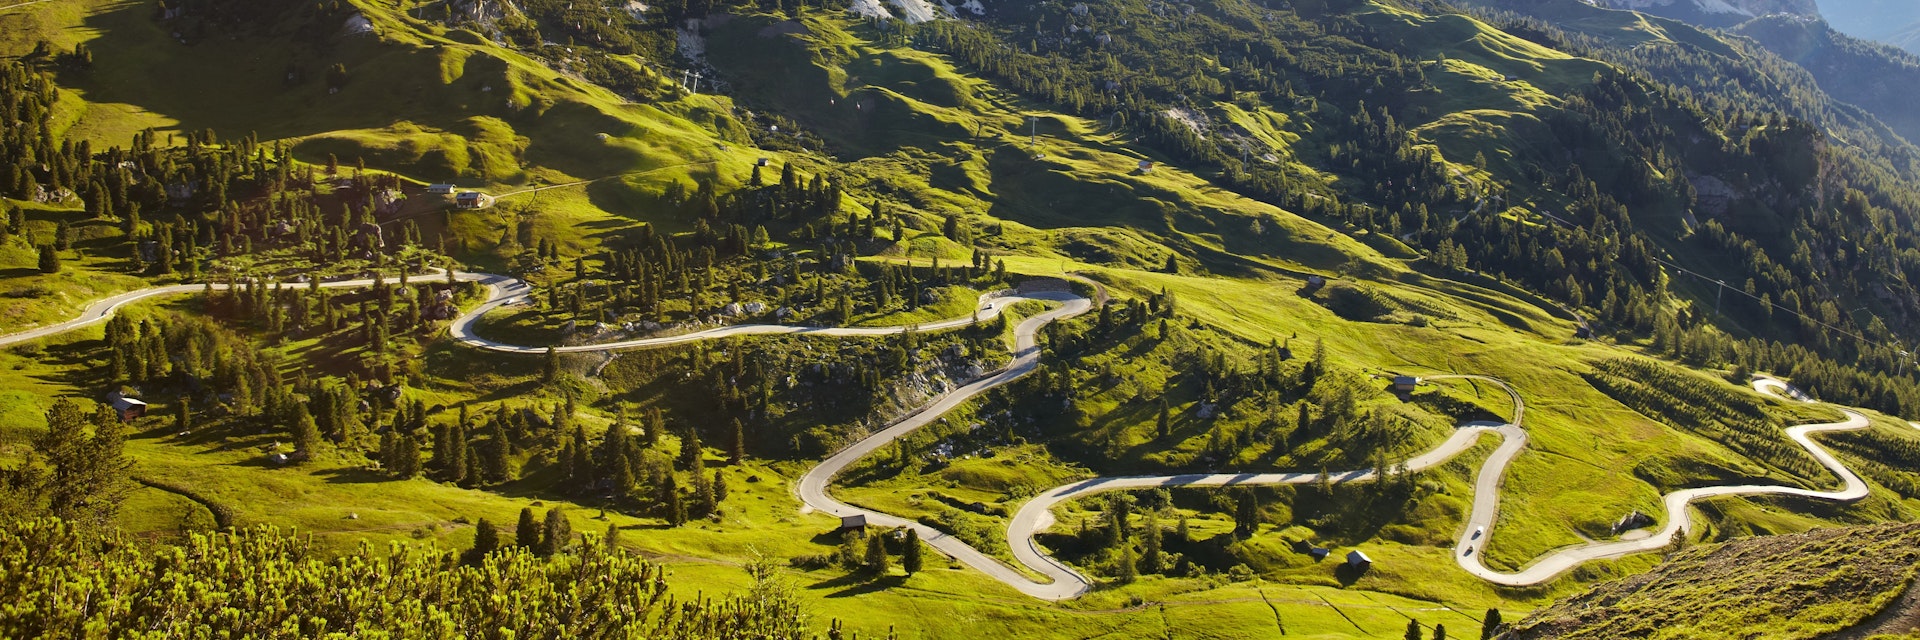 Overview of road winding through valley below Italian Alps.